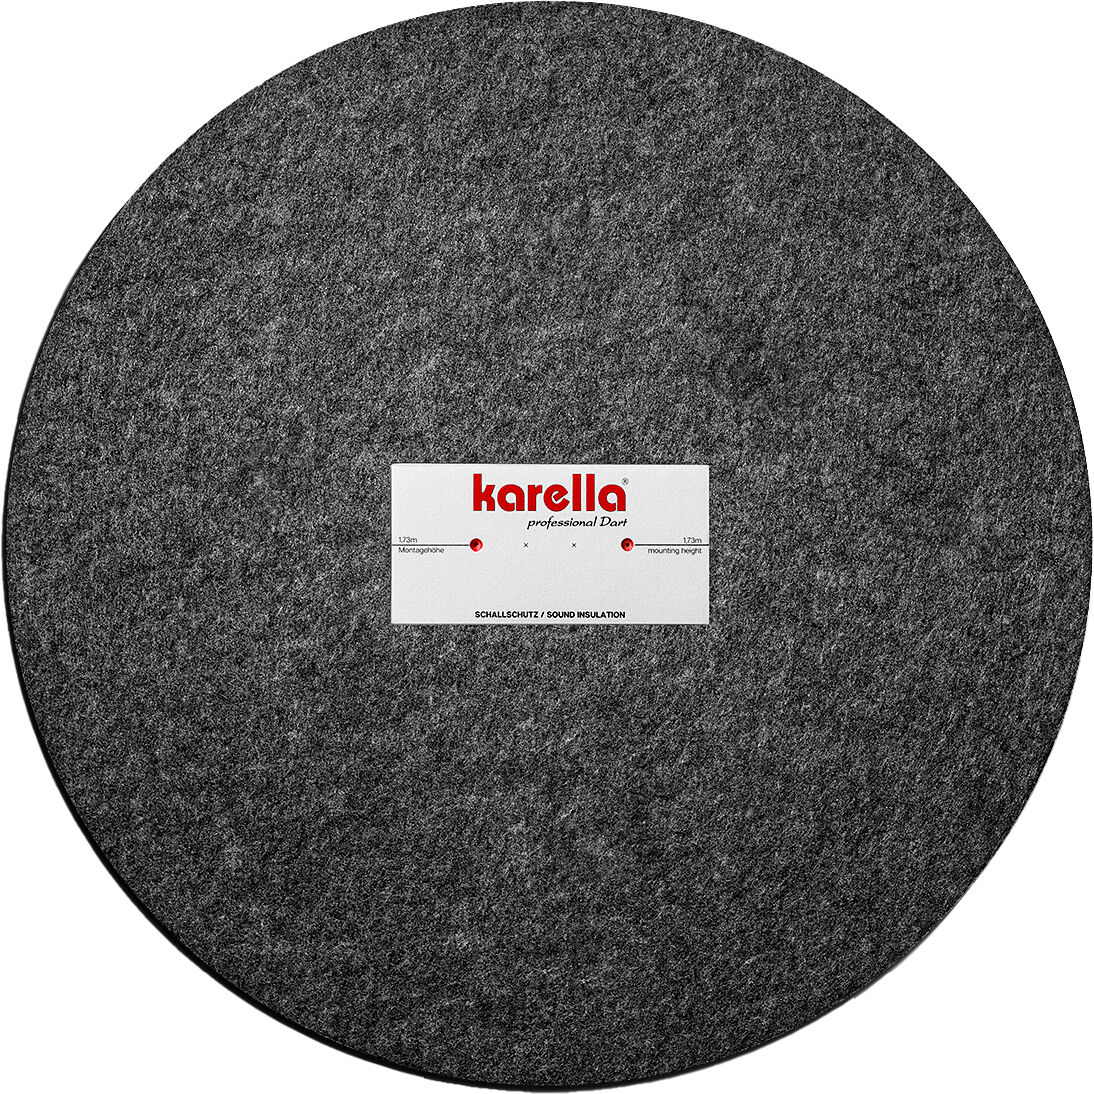 Karella - Schallschutz für Steeldartboards